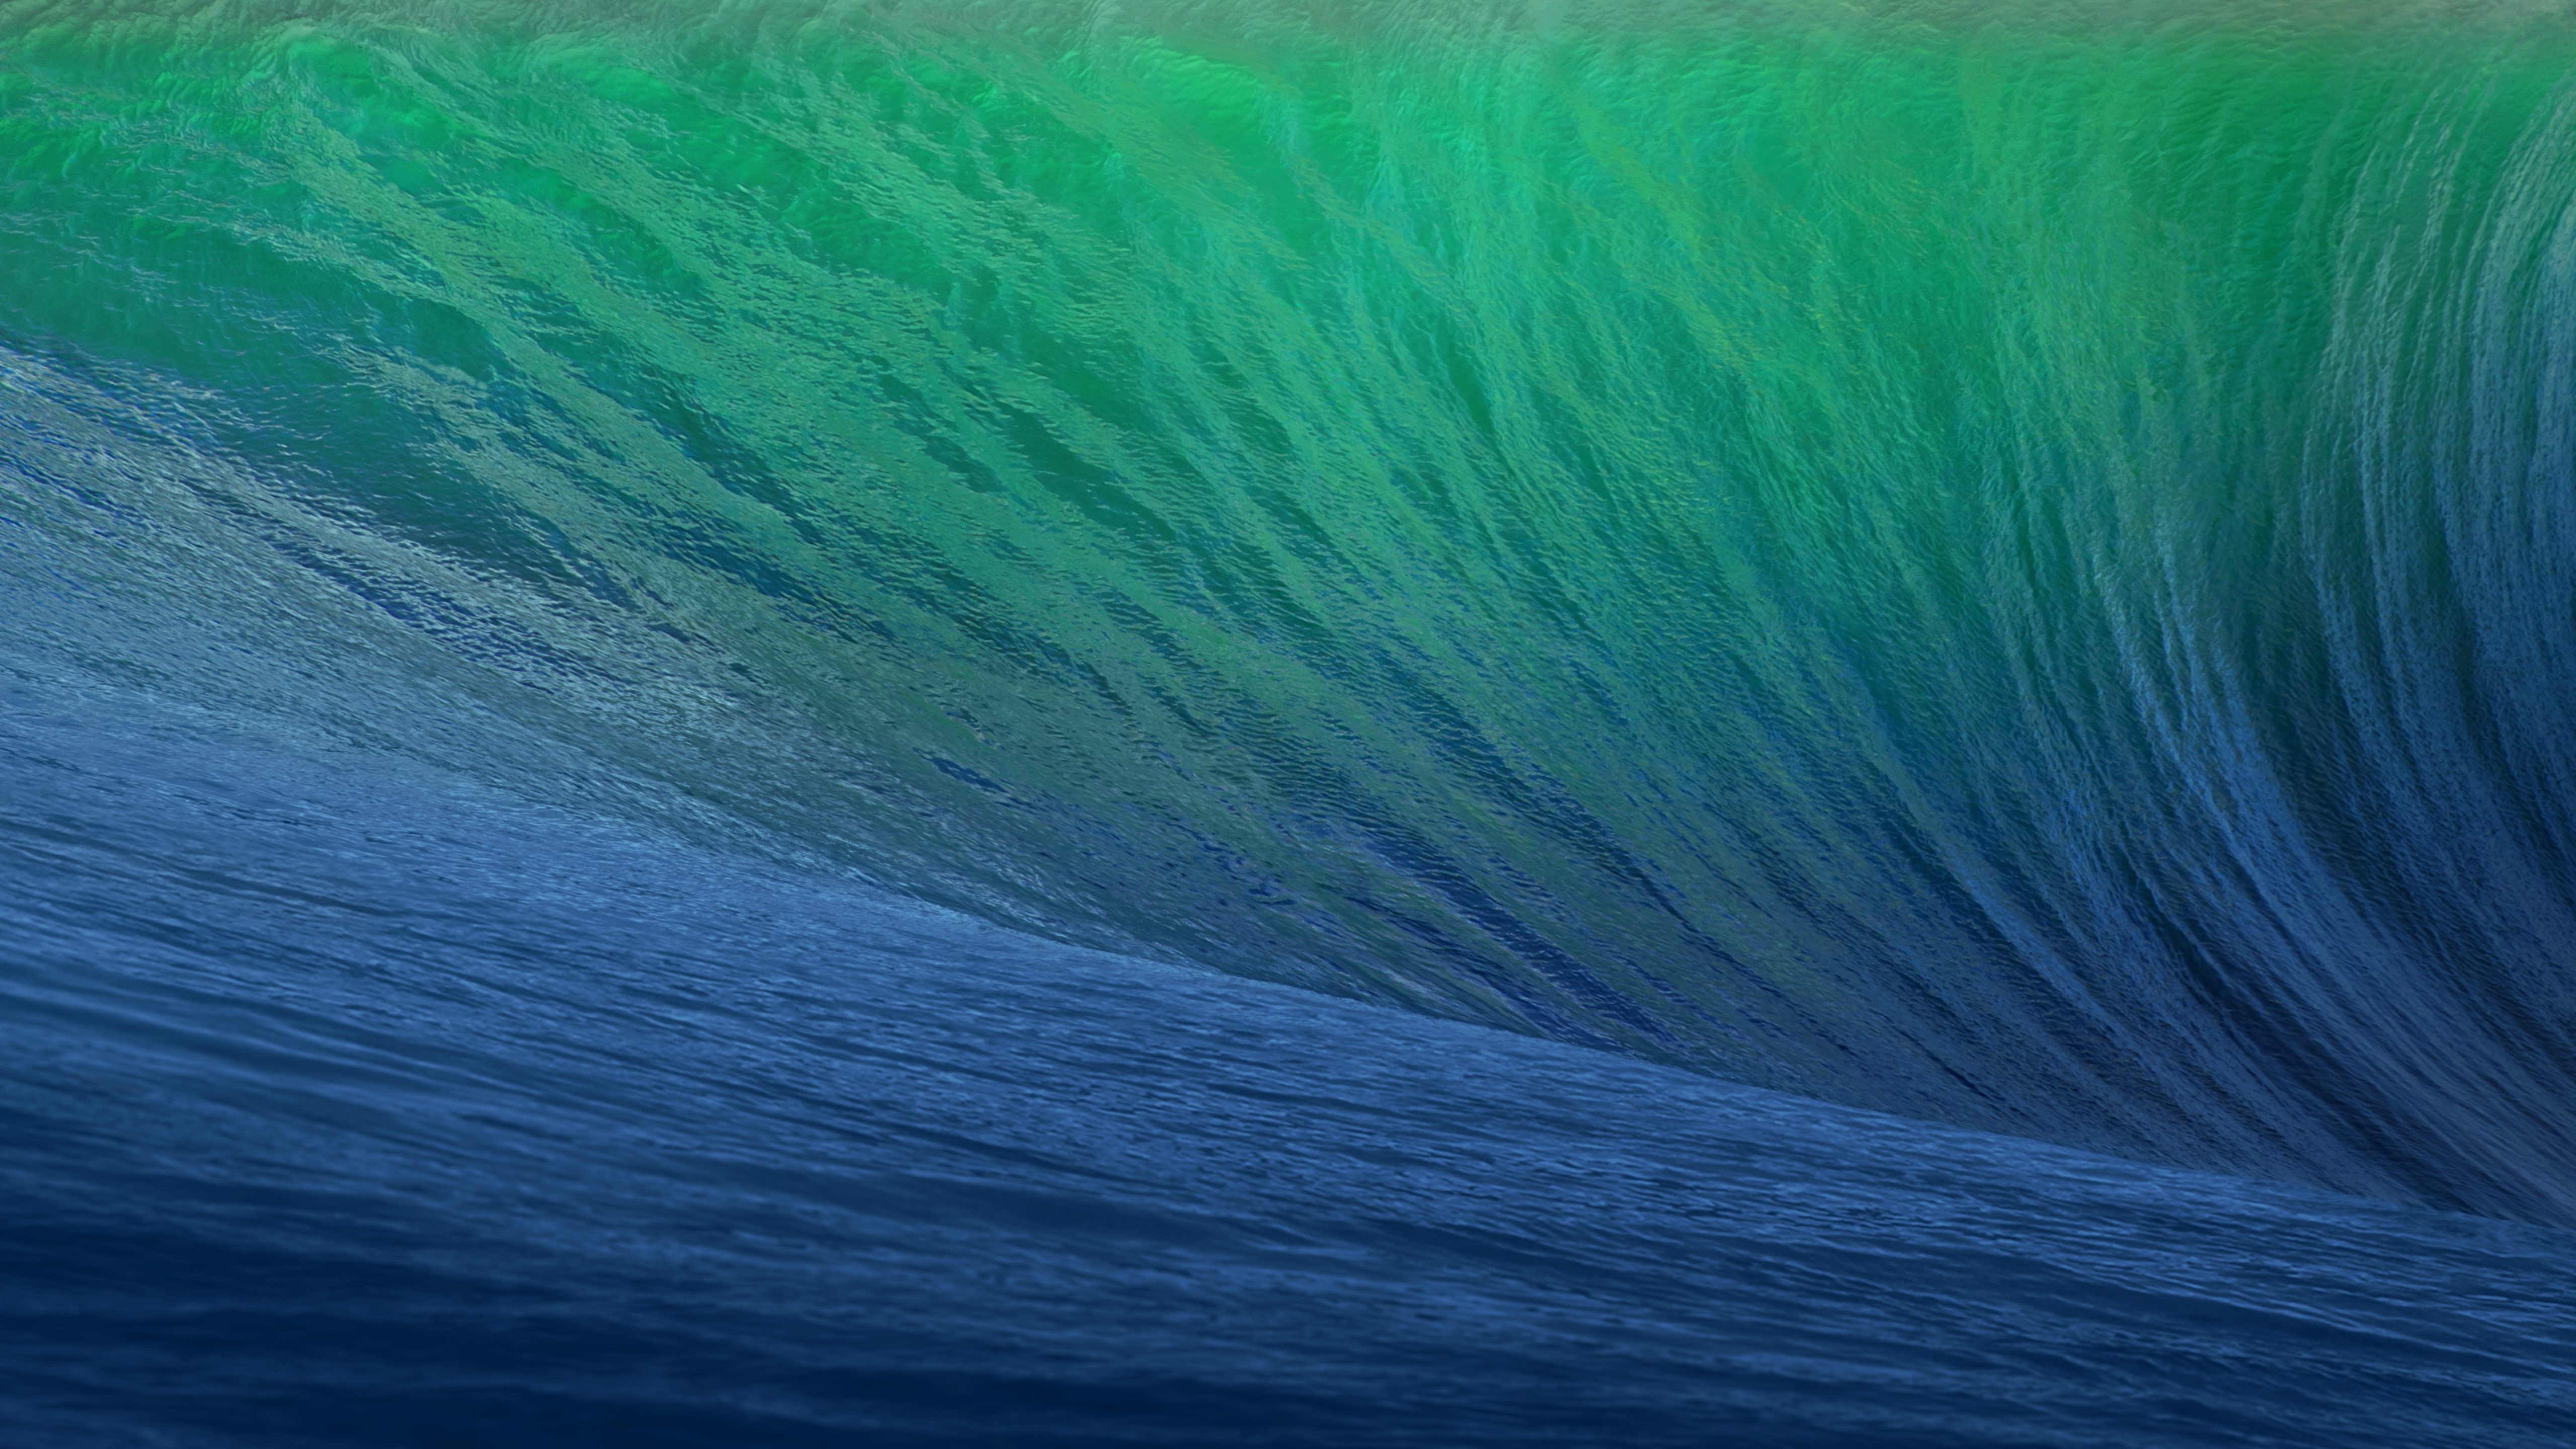 ios 10 wallpaper,wave,green,blue,wind wave,aqua